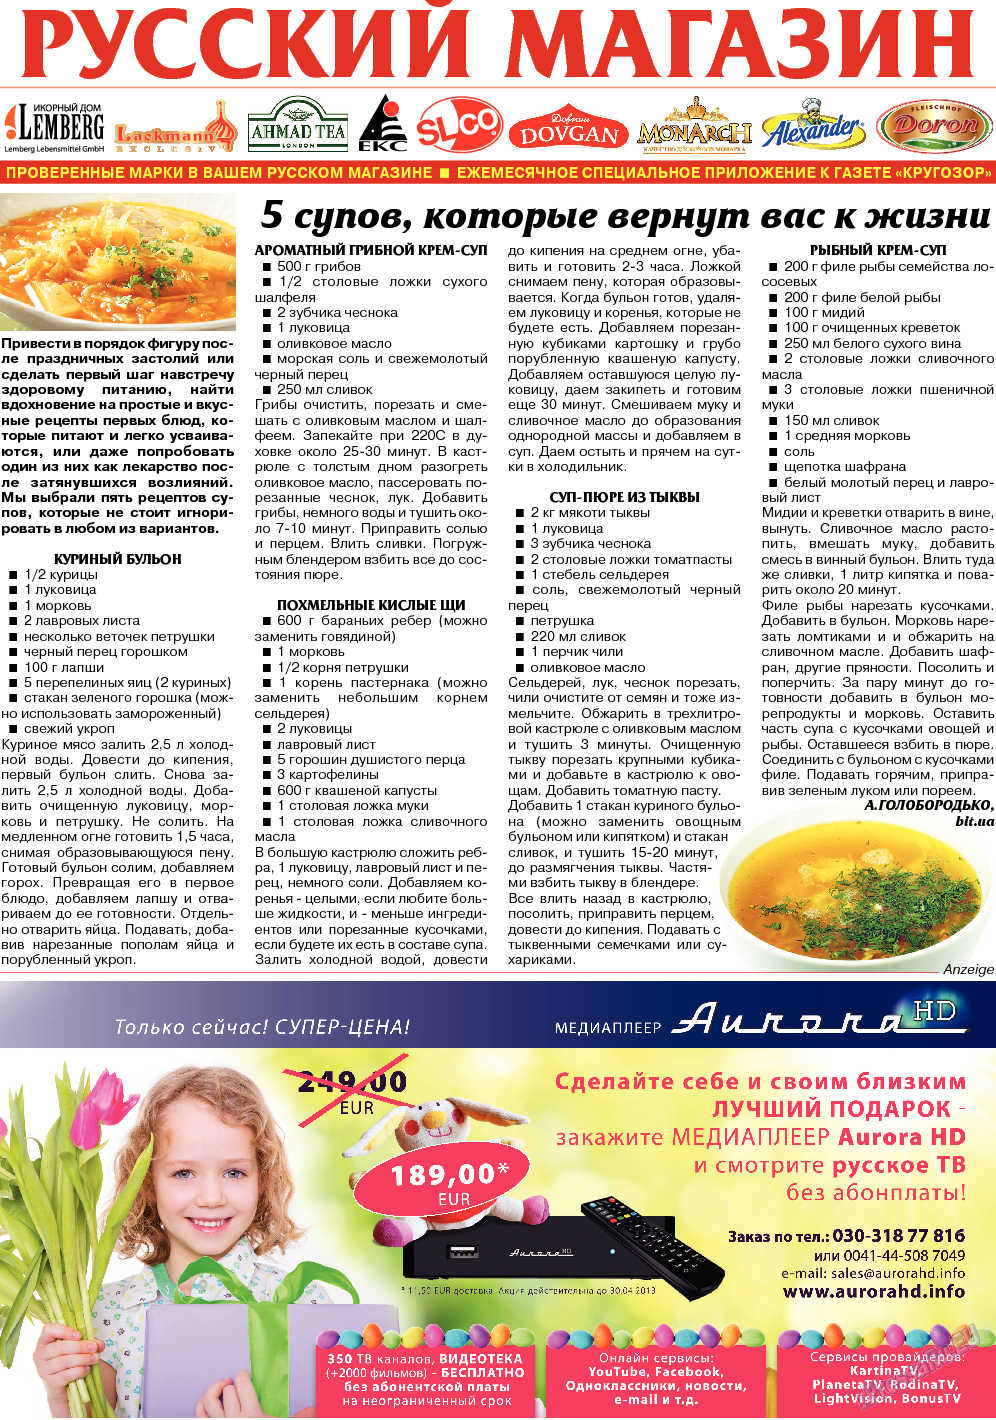 Кругозор (газета). 2014 год, номер 3, стр. 21